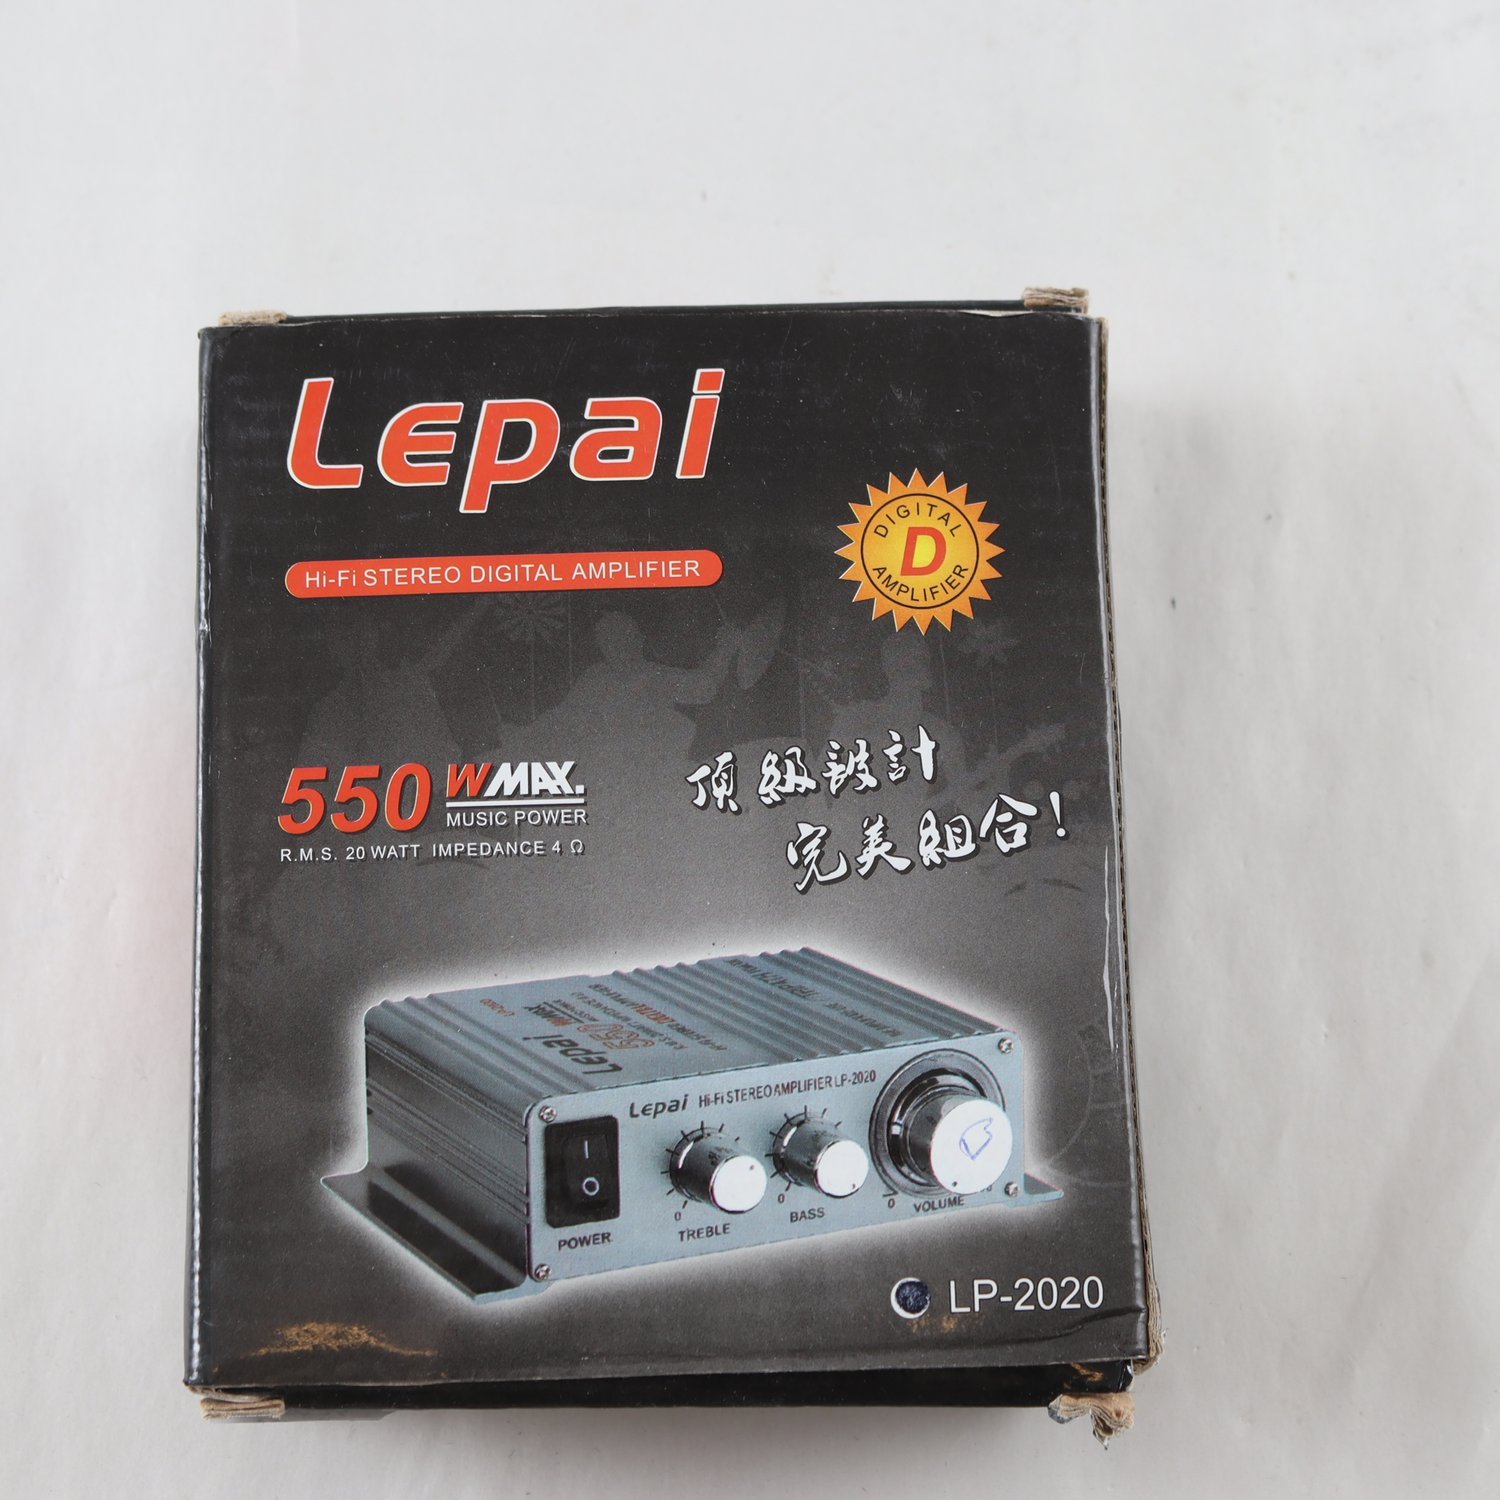 Amplifier,Lepai 550 wmax.